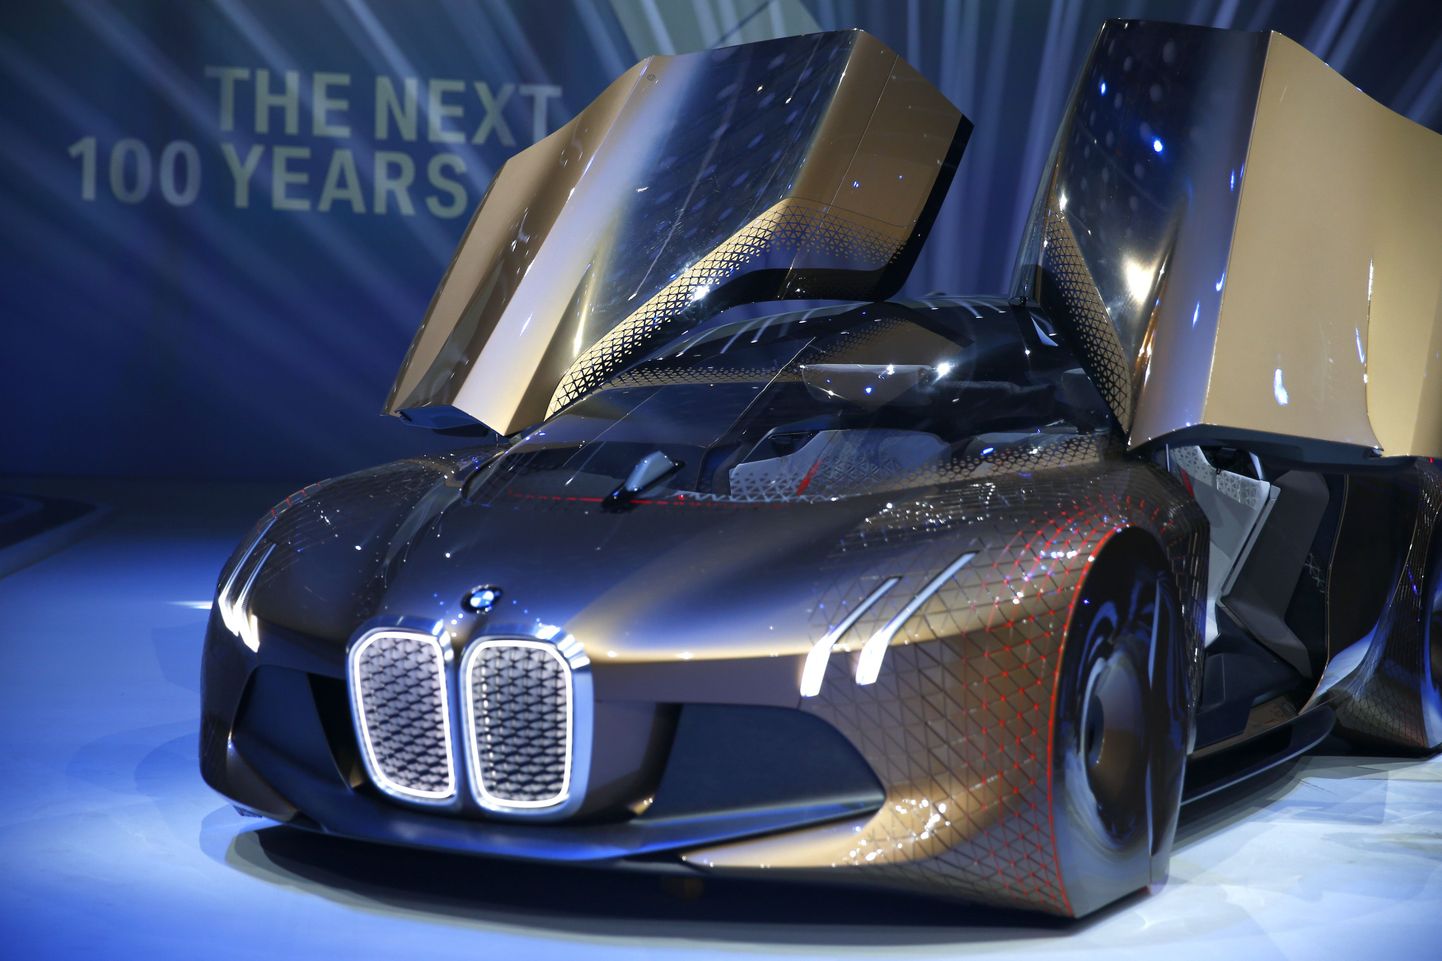 BMW kontseptauto "The Next 100 Years". Pilt on illustratiivse tähendusega.